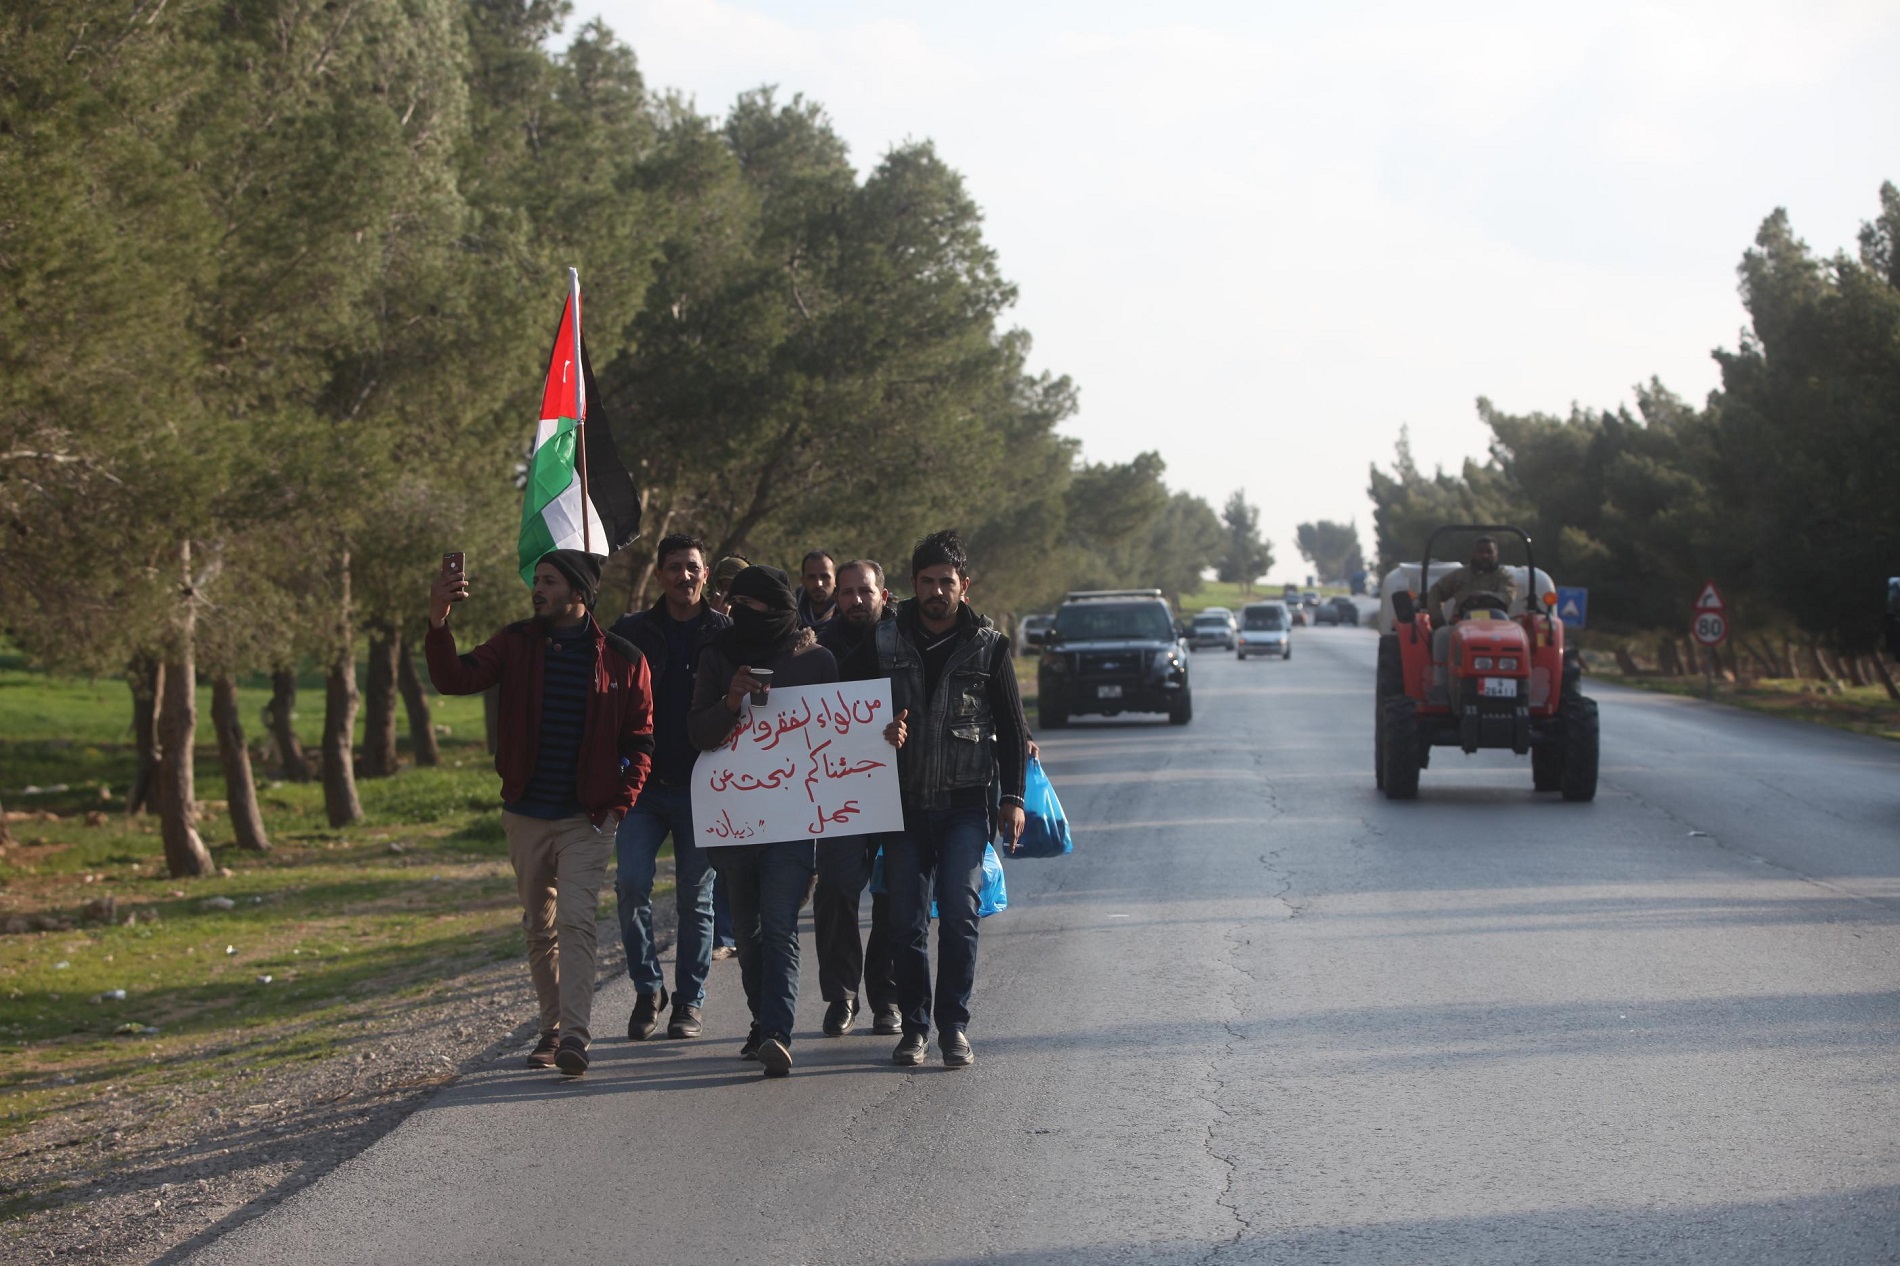 مشاركون من لواء ذيبان أثناء توجههم إلى عمّان خلال مسيرة لباحثين عن عمل. صلاح ملكاوي/ المملكة